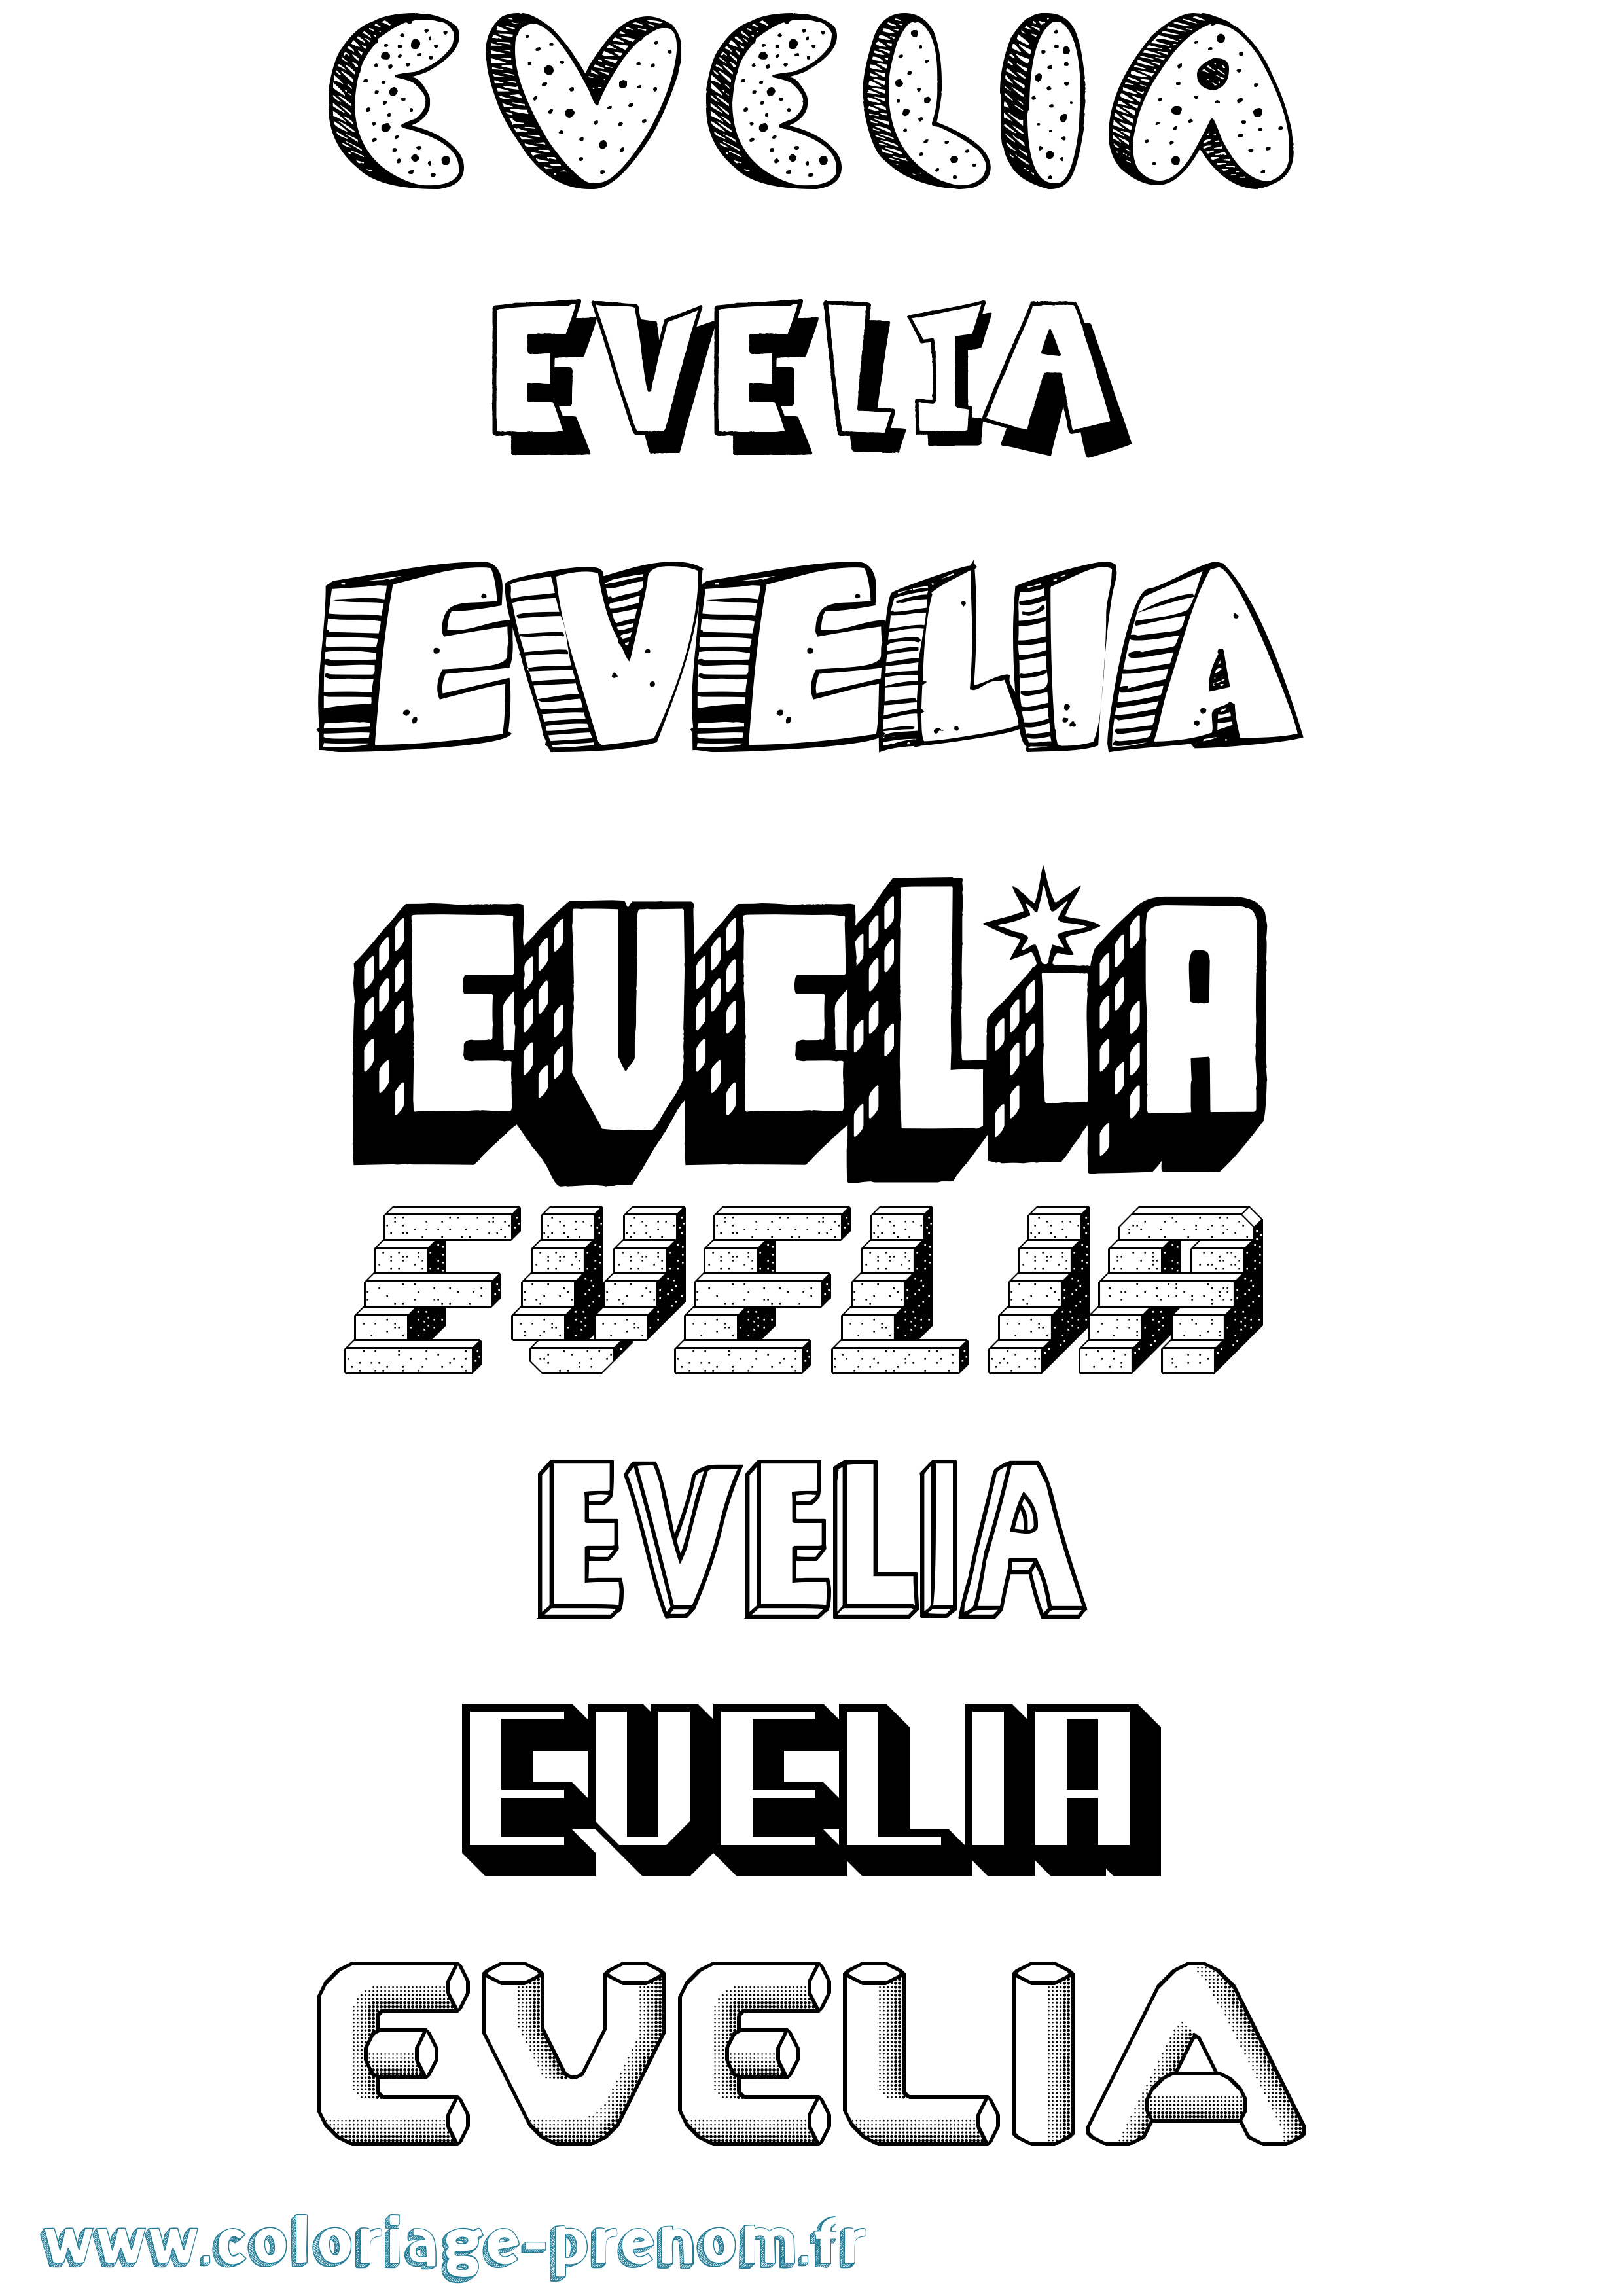 Coloriage prénom Evelia Effet 3D